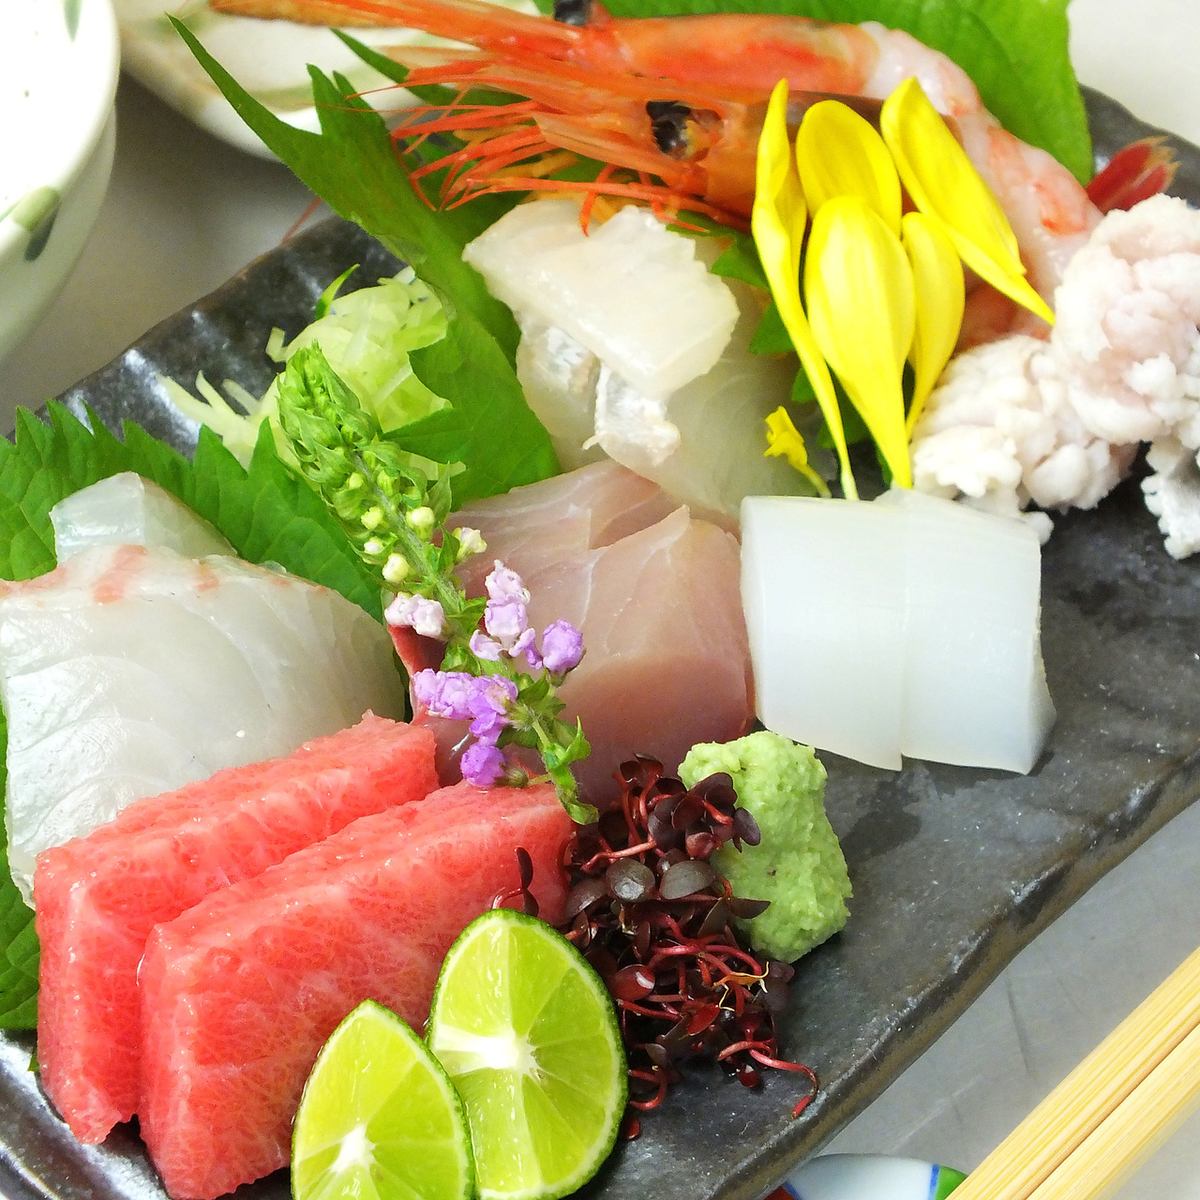 由经过京都烹饪和酒店培训的店主提供的正宗日本料理